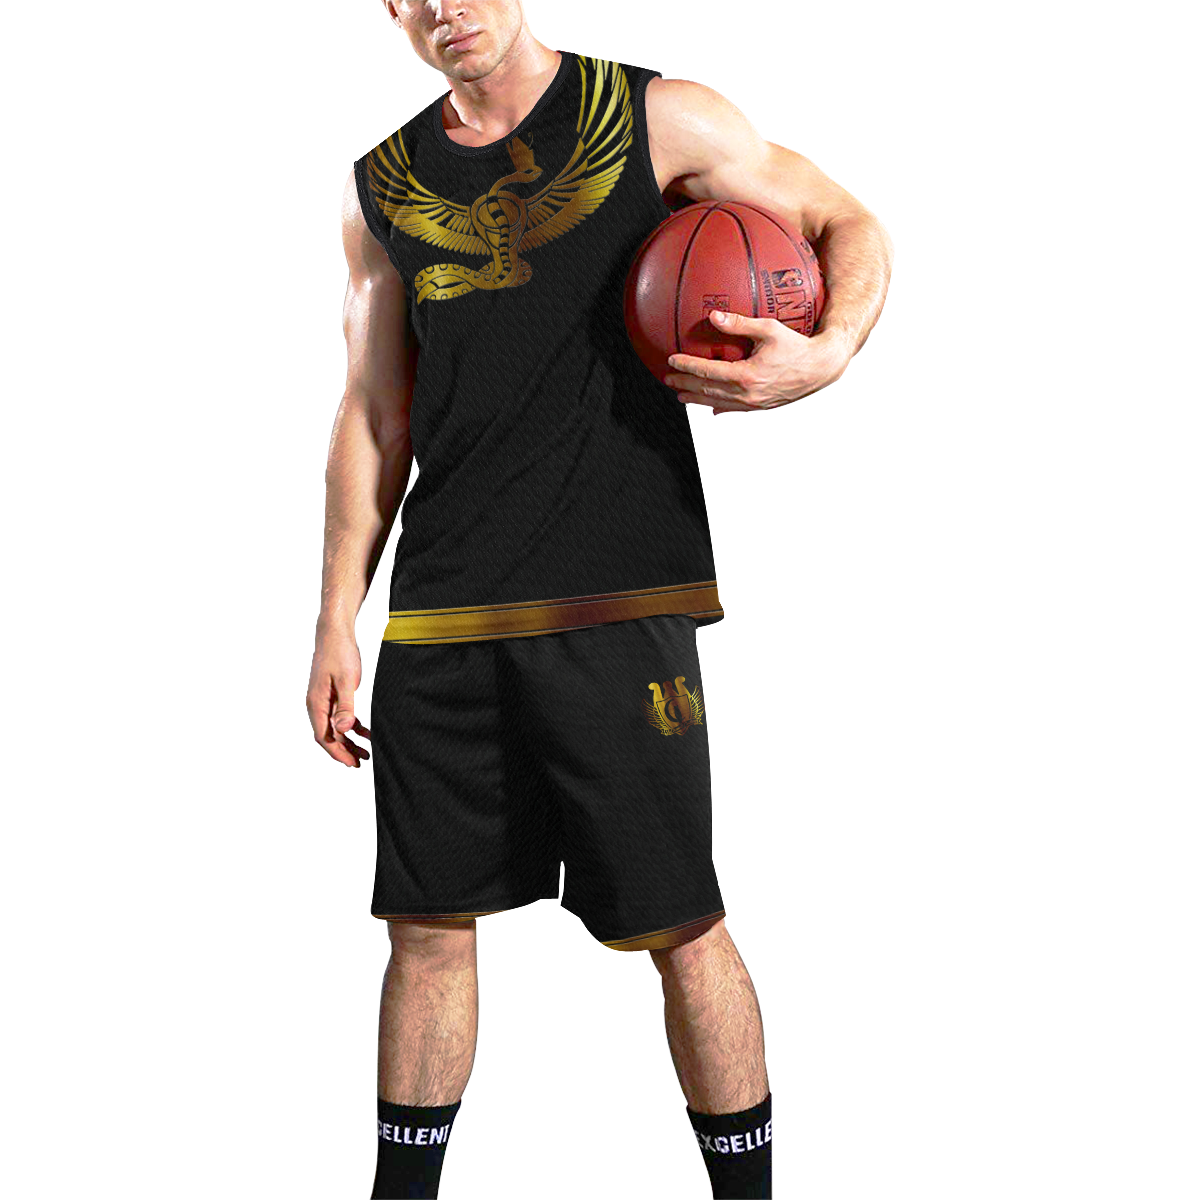 NEKHBET All Over Print Basketball Uniform